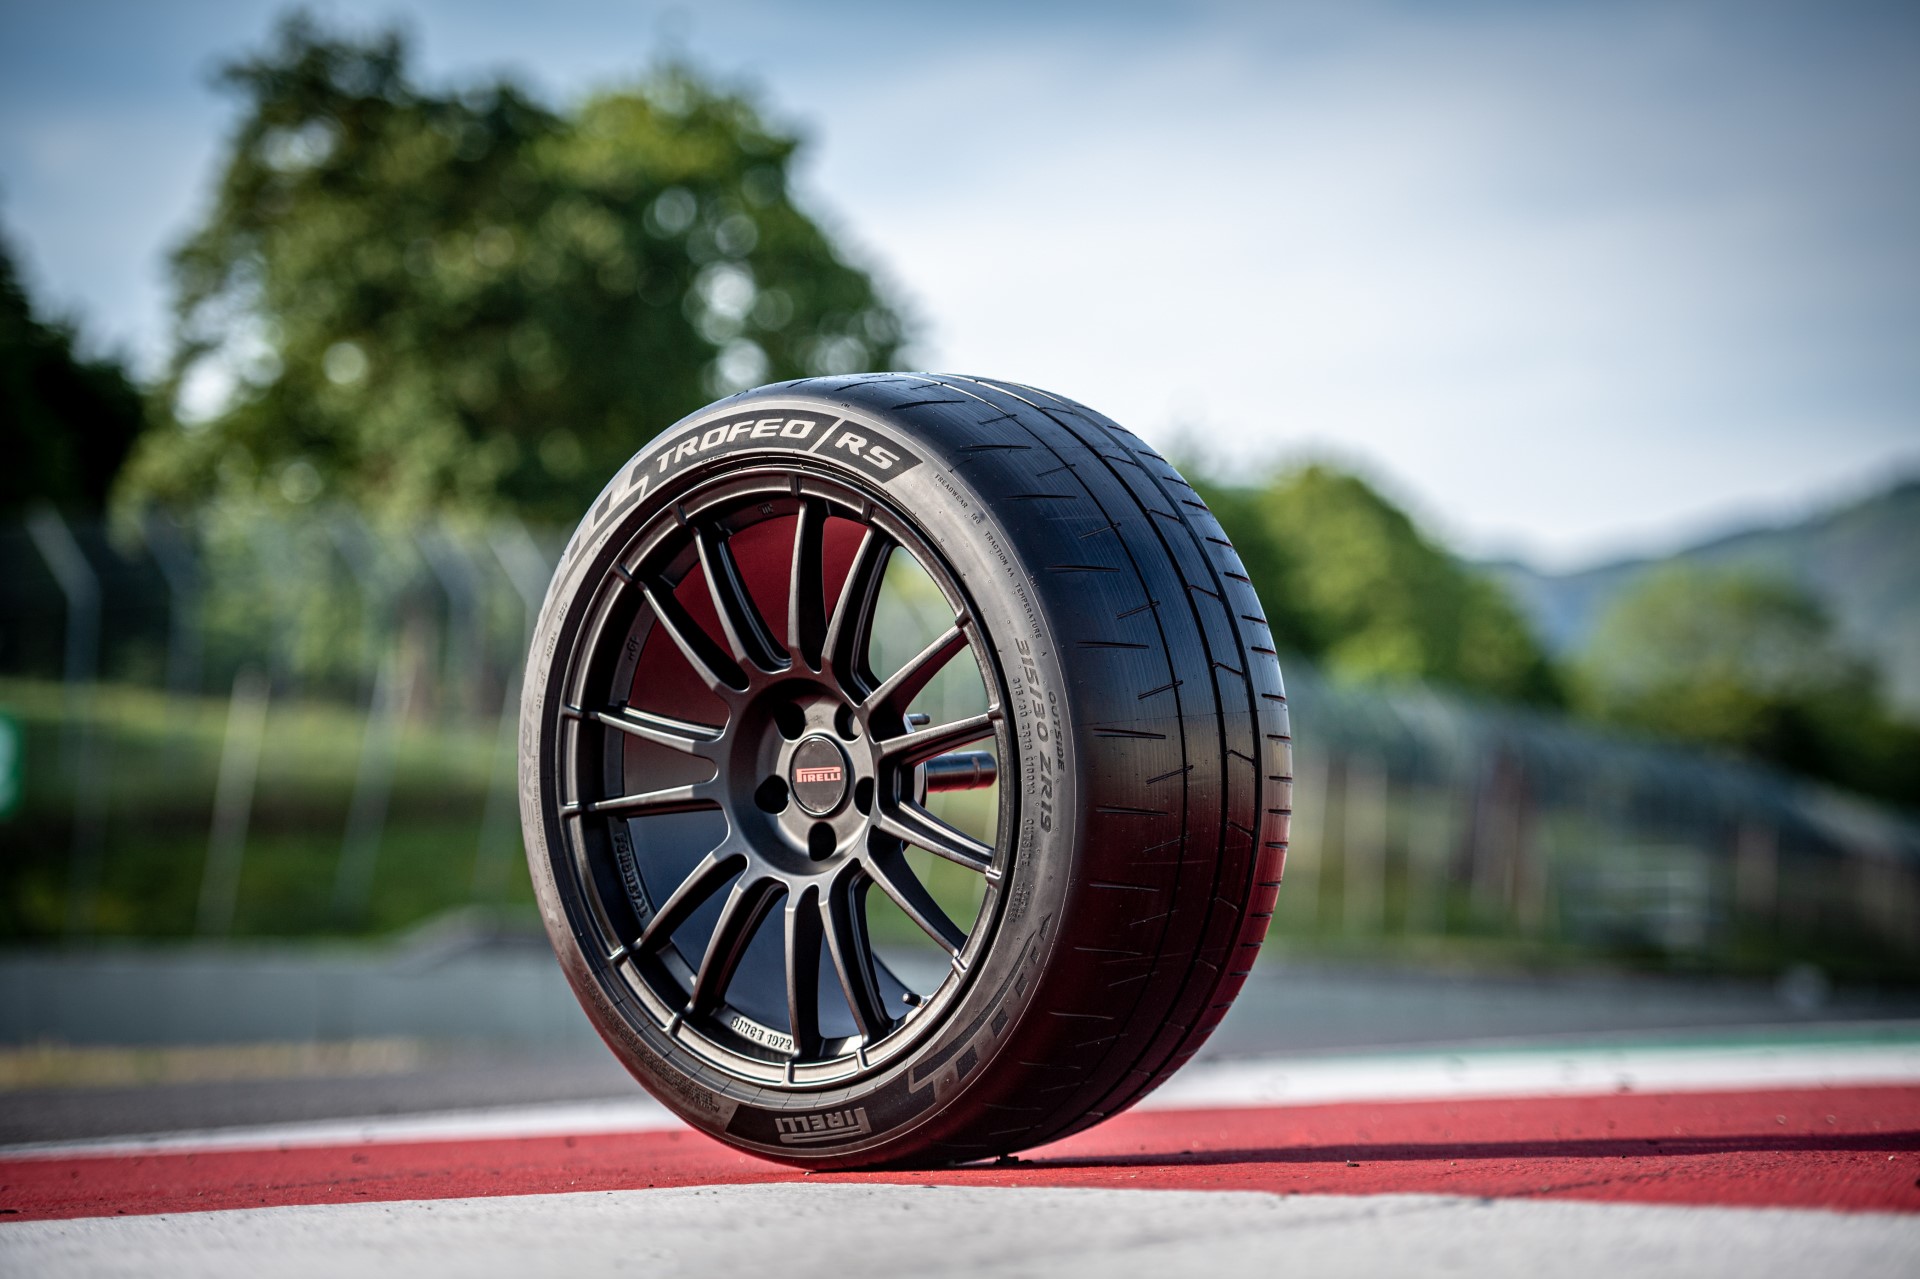 Pirelli apresenta P Zero Trofeo RS: Pagani quer equipar hipercarro Utopia com novo pneu semi-slick de alta performance